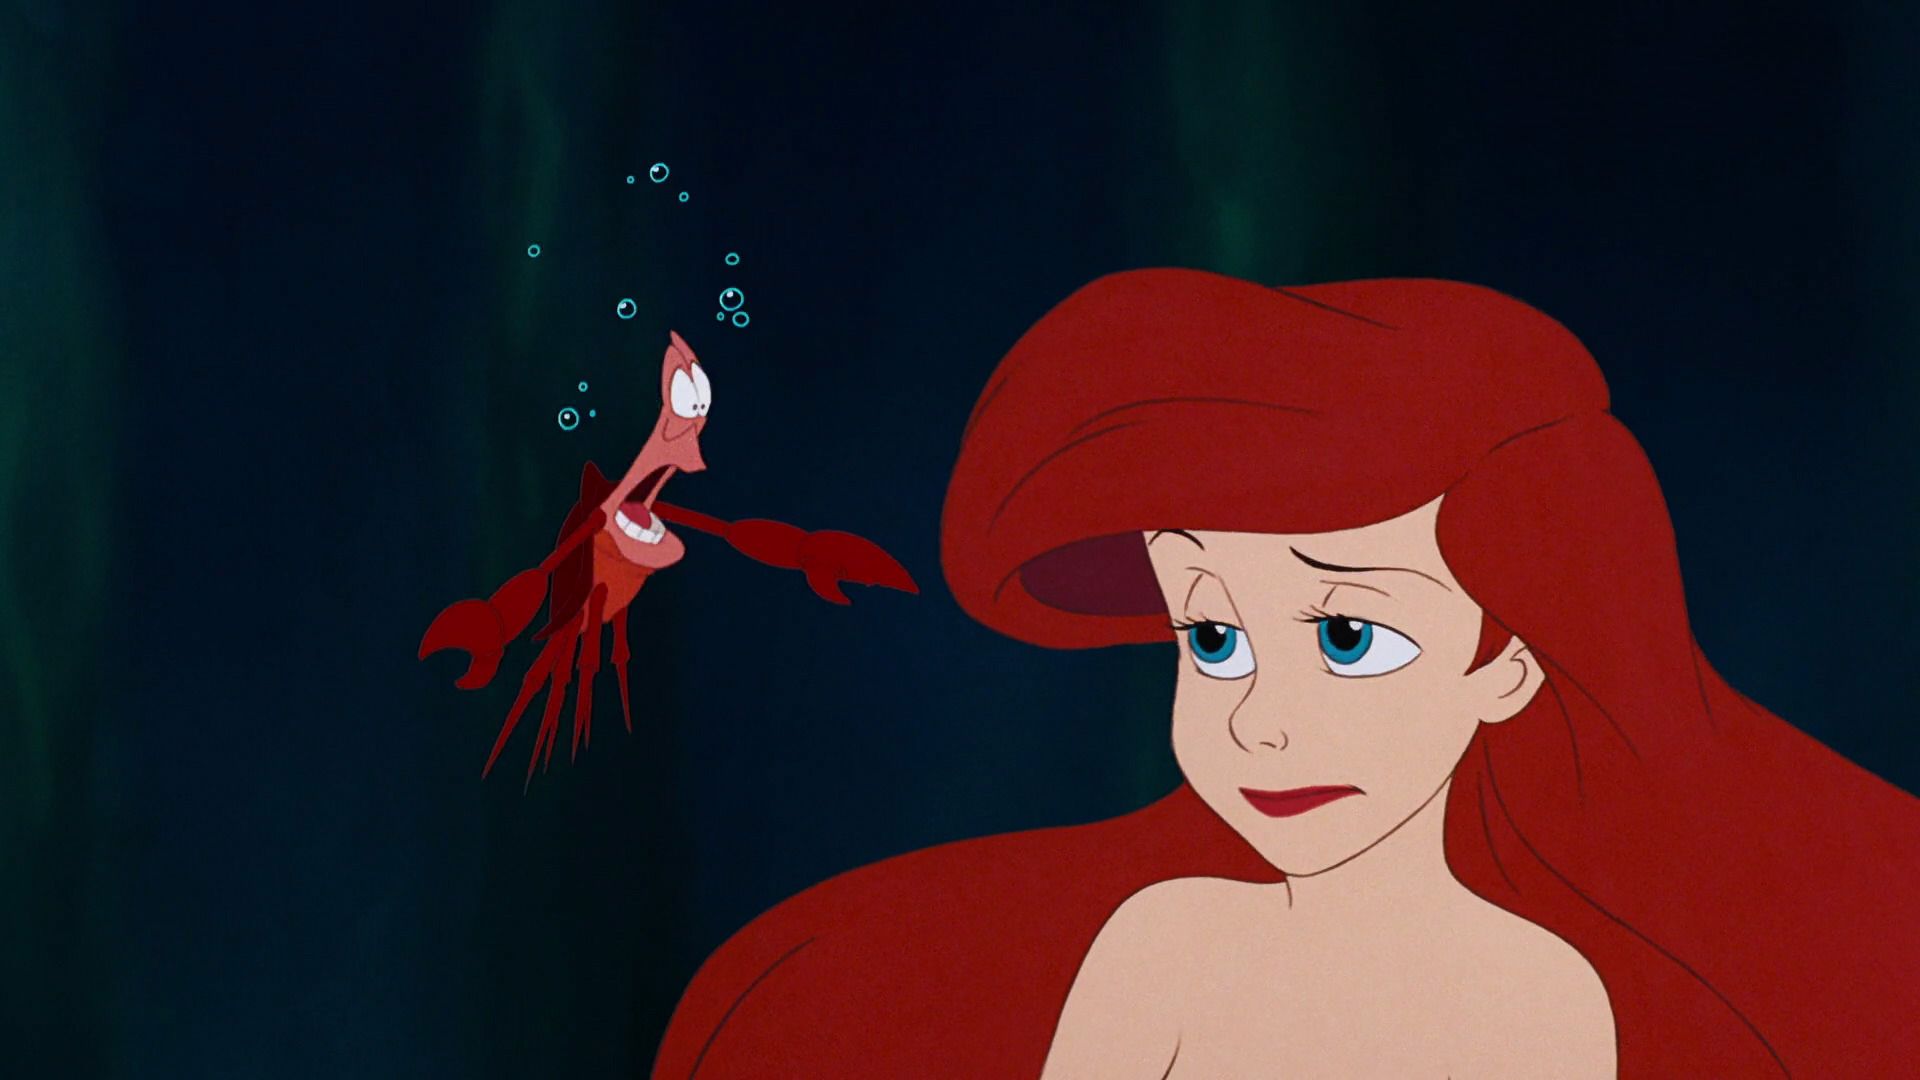 Sebastian and Ariel